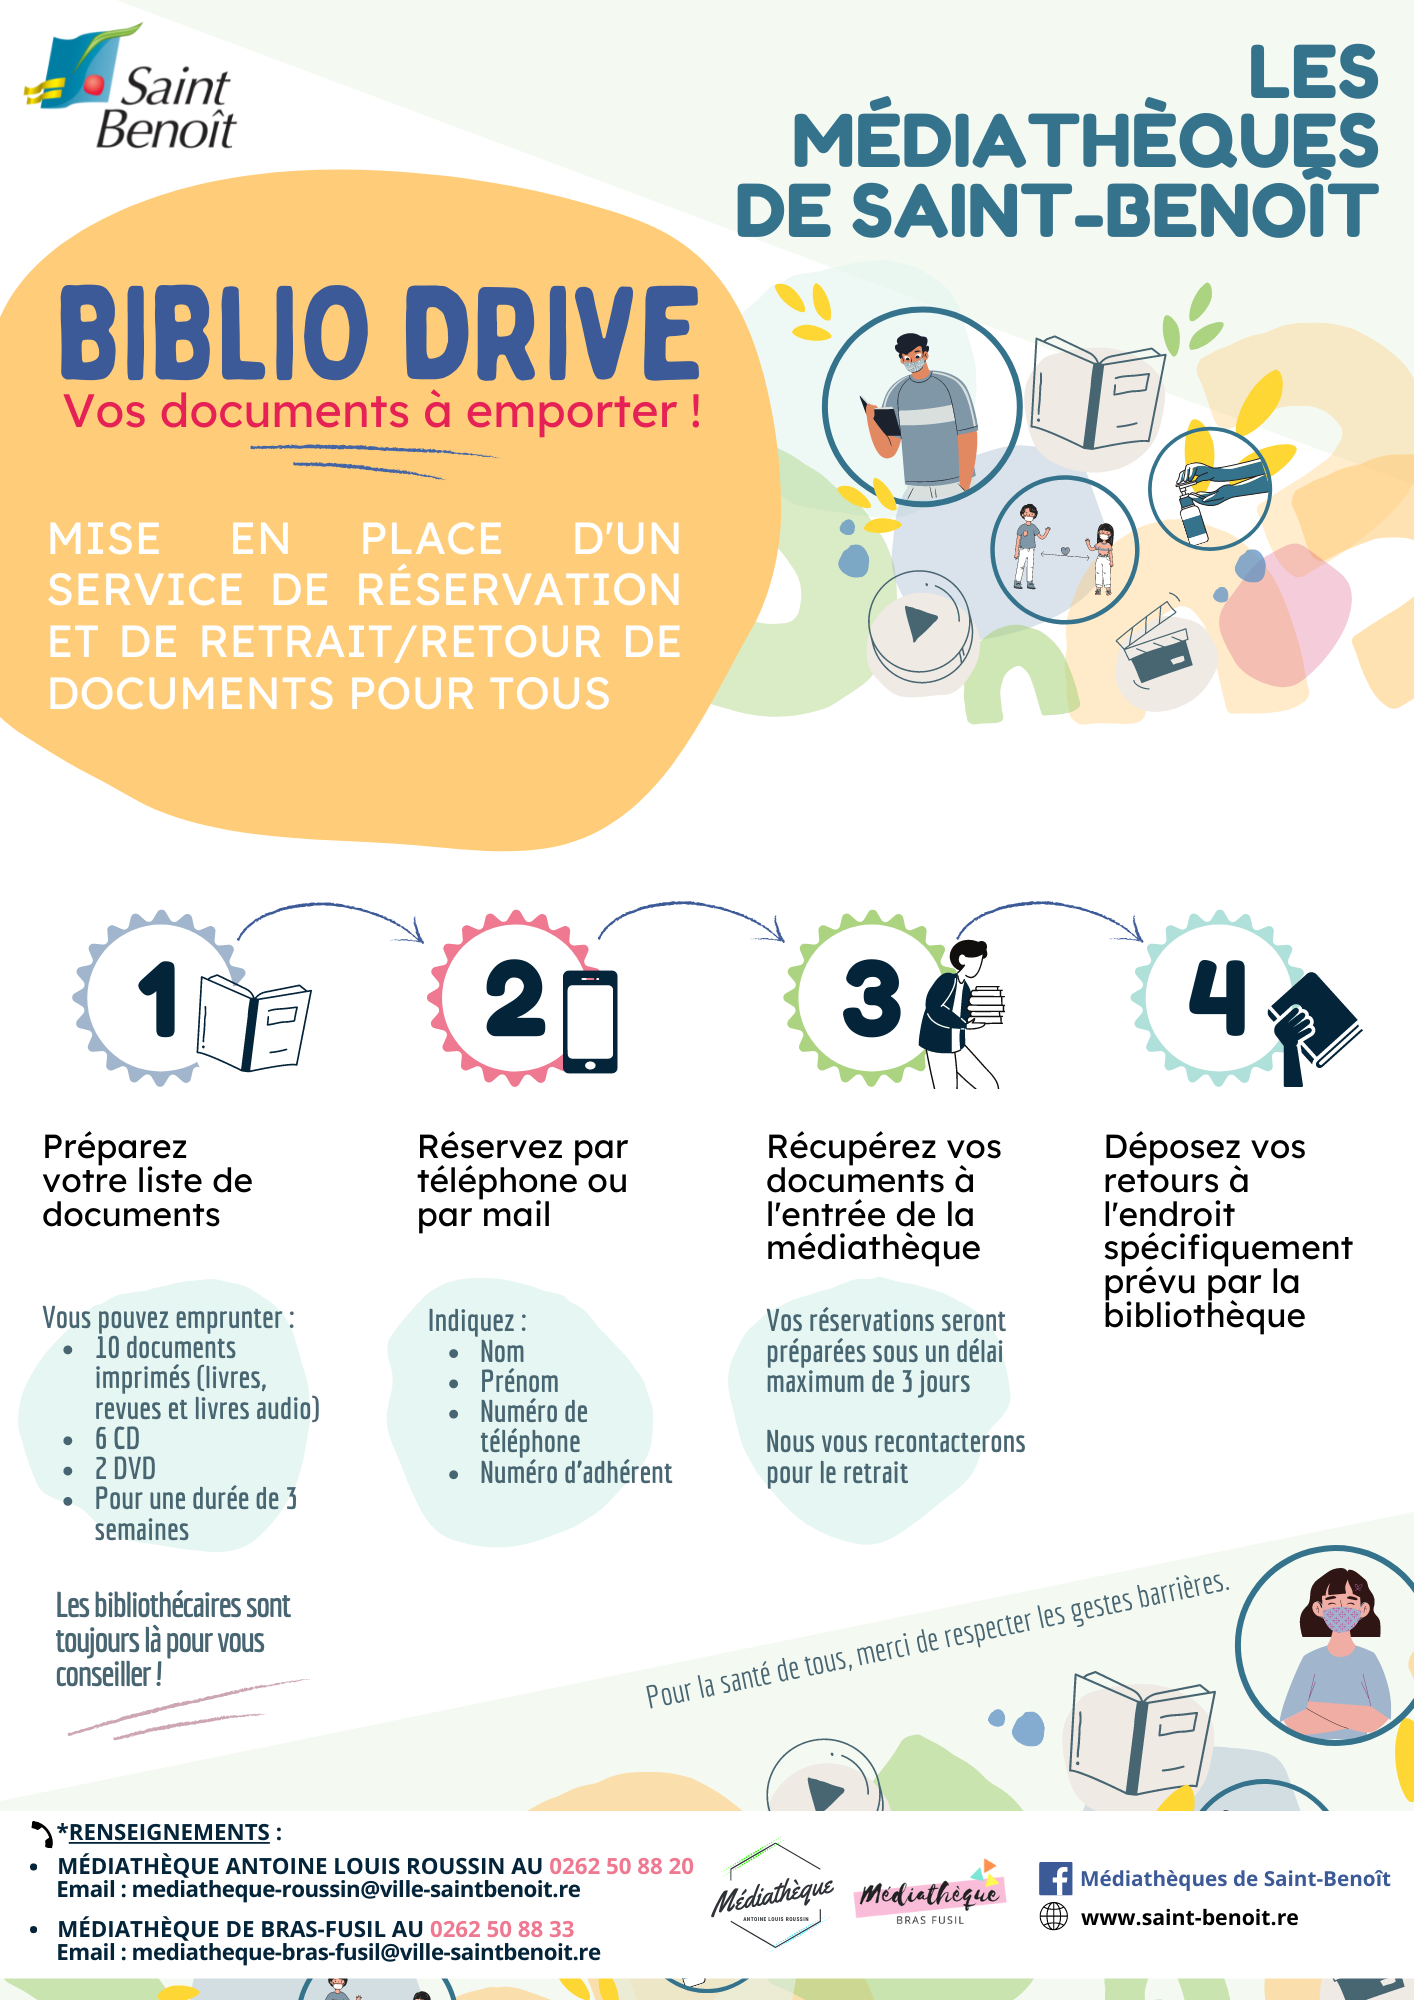  Biblio drive, vos documents à emporter !